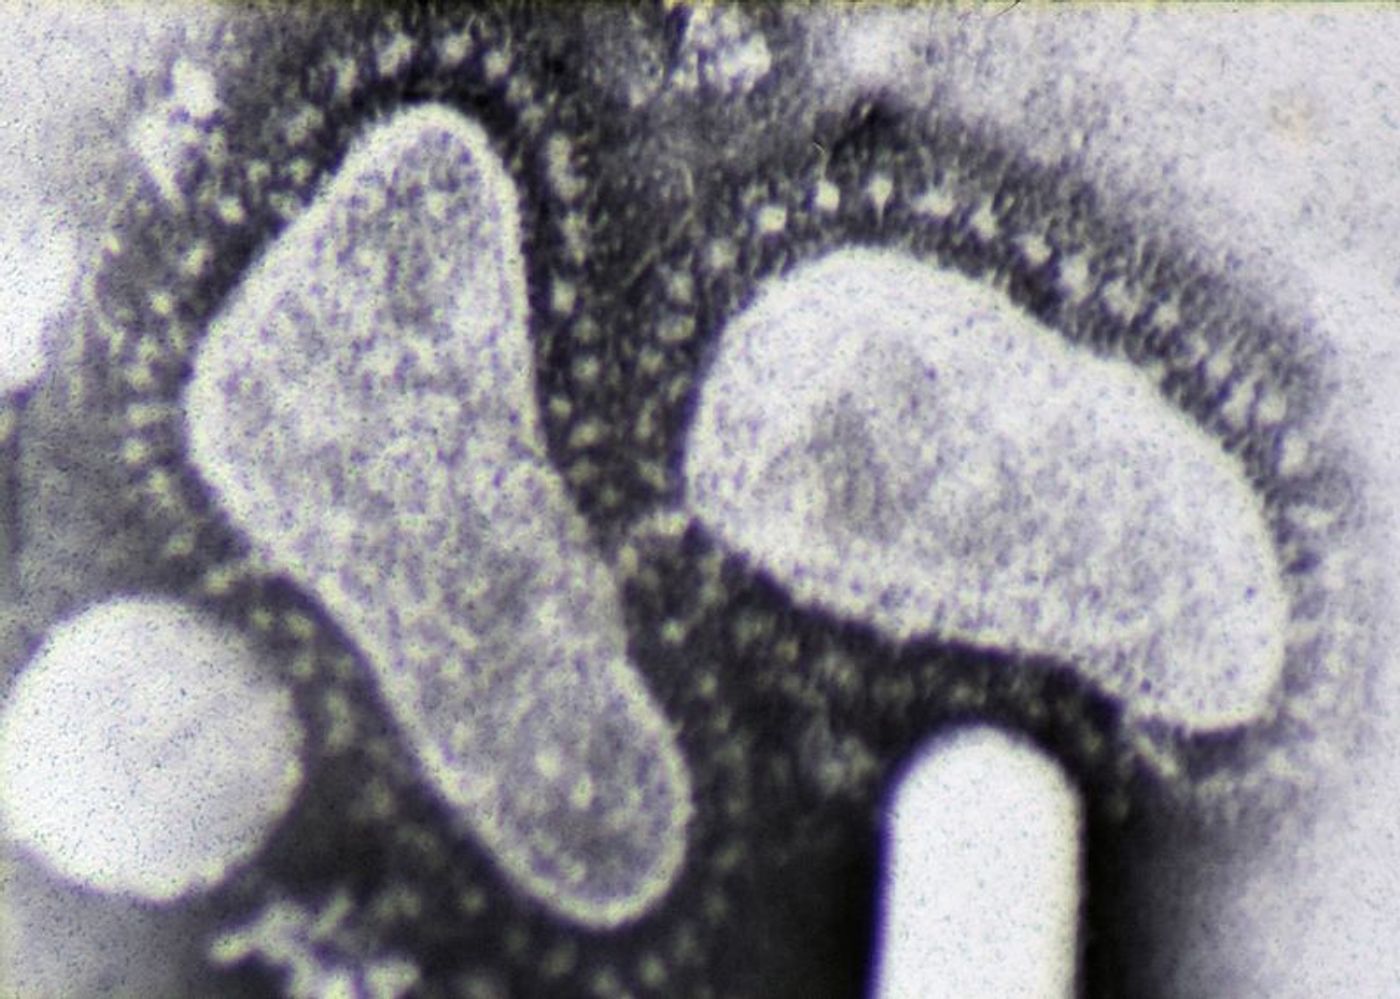 Electron micrograph of two coronaviruses. Credit: Dr. Graham Beards